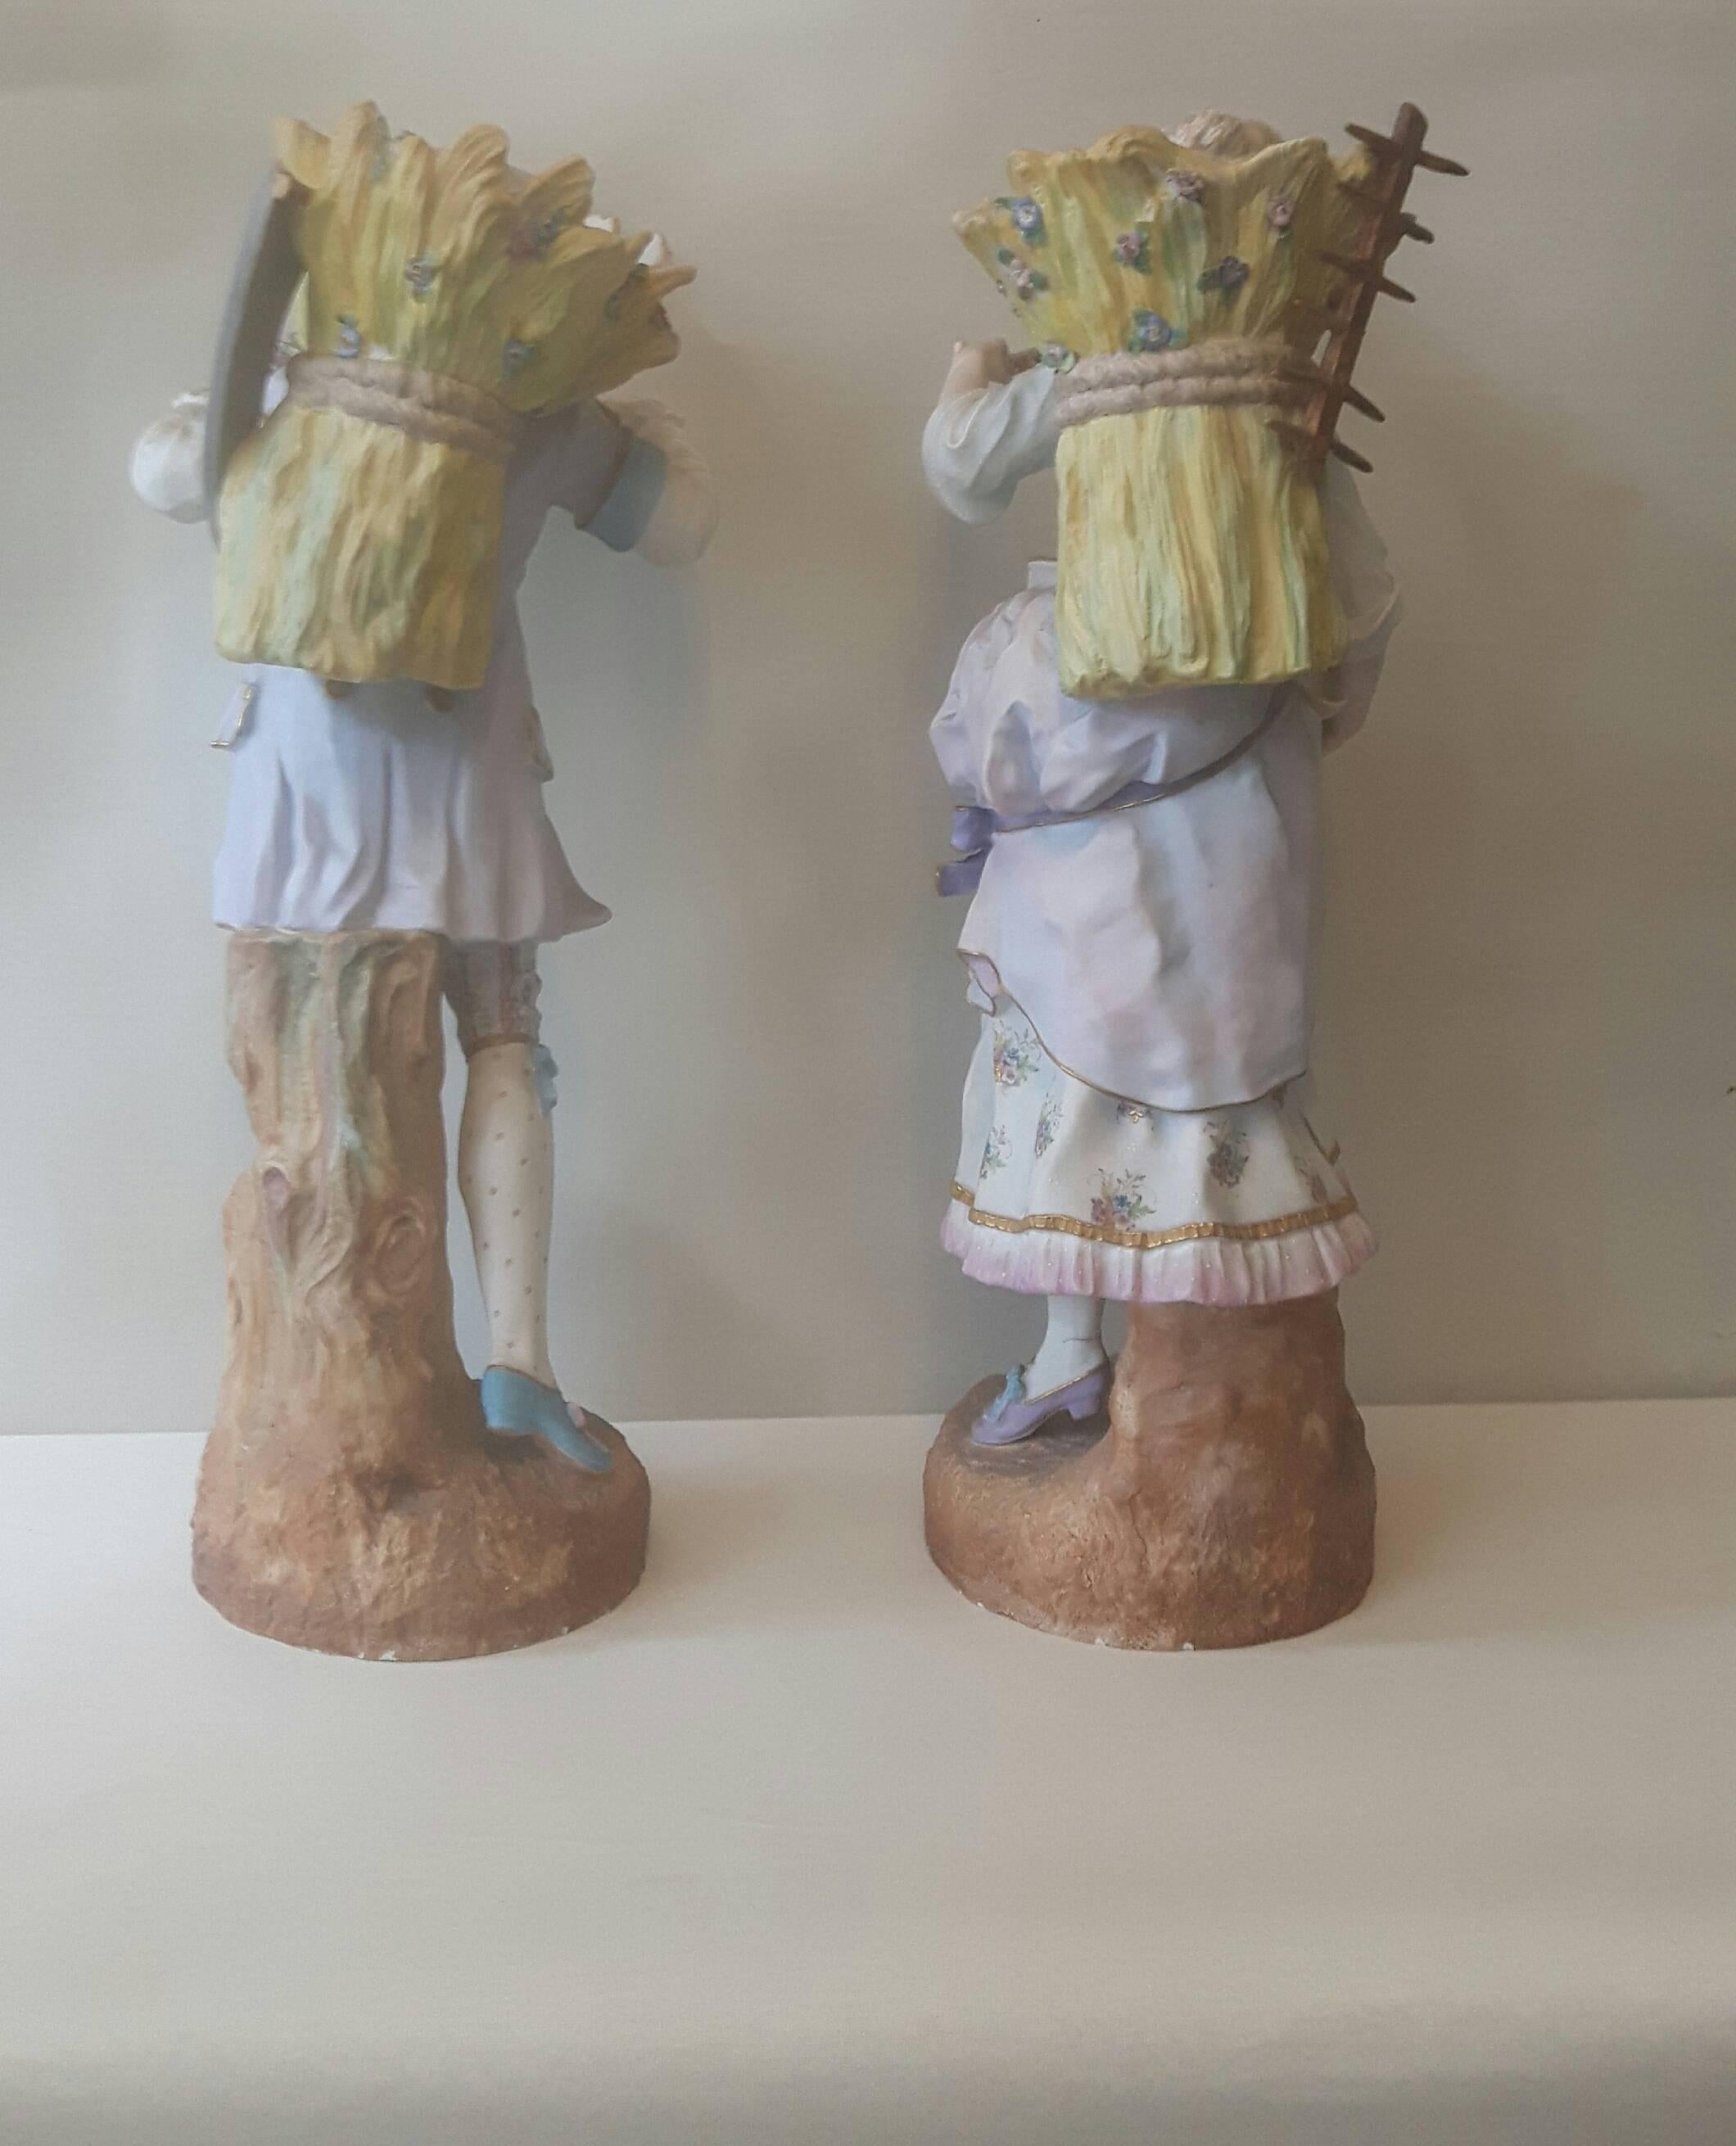 Paire de figurines en porcelaine bisque représentant un couple de courtisans en tenue du XVIIIe siècle, portant des gerbes de blé sur le dos, elle tenant son chapeau avec des fleurs à l'intérieur, son compagnon lui tendant un petit bouquet de